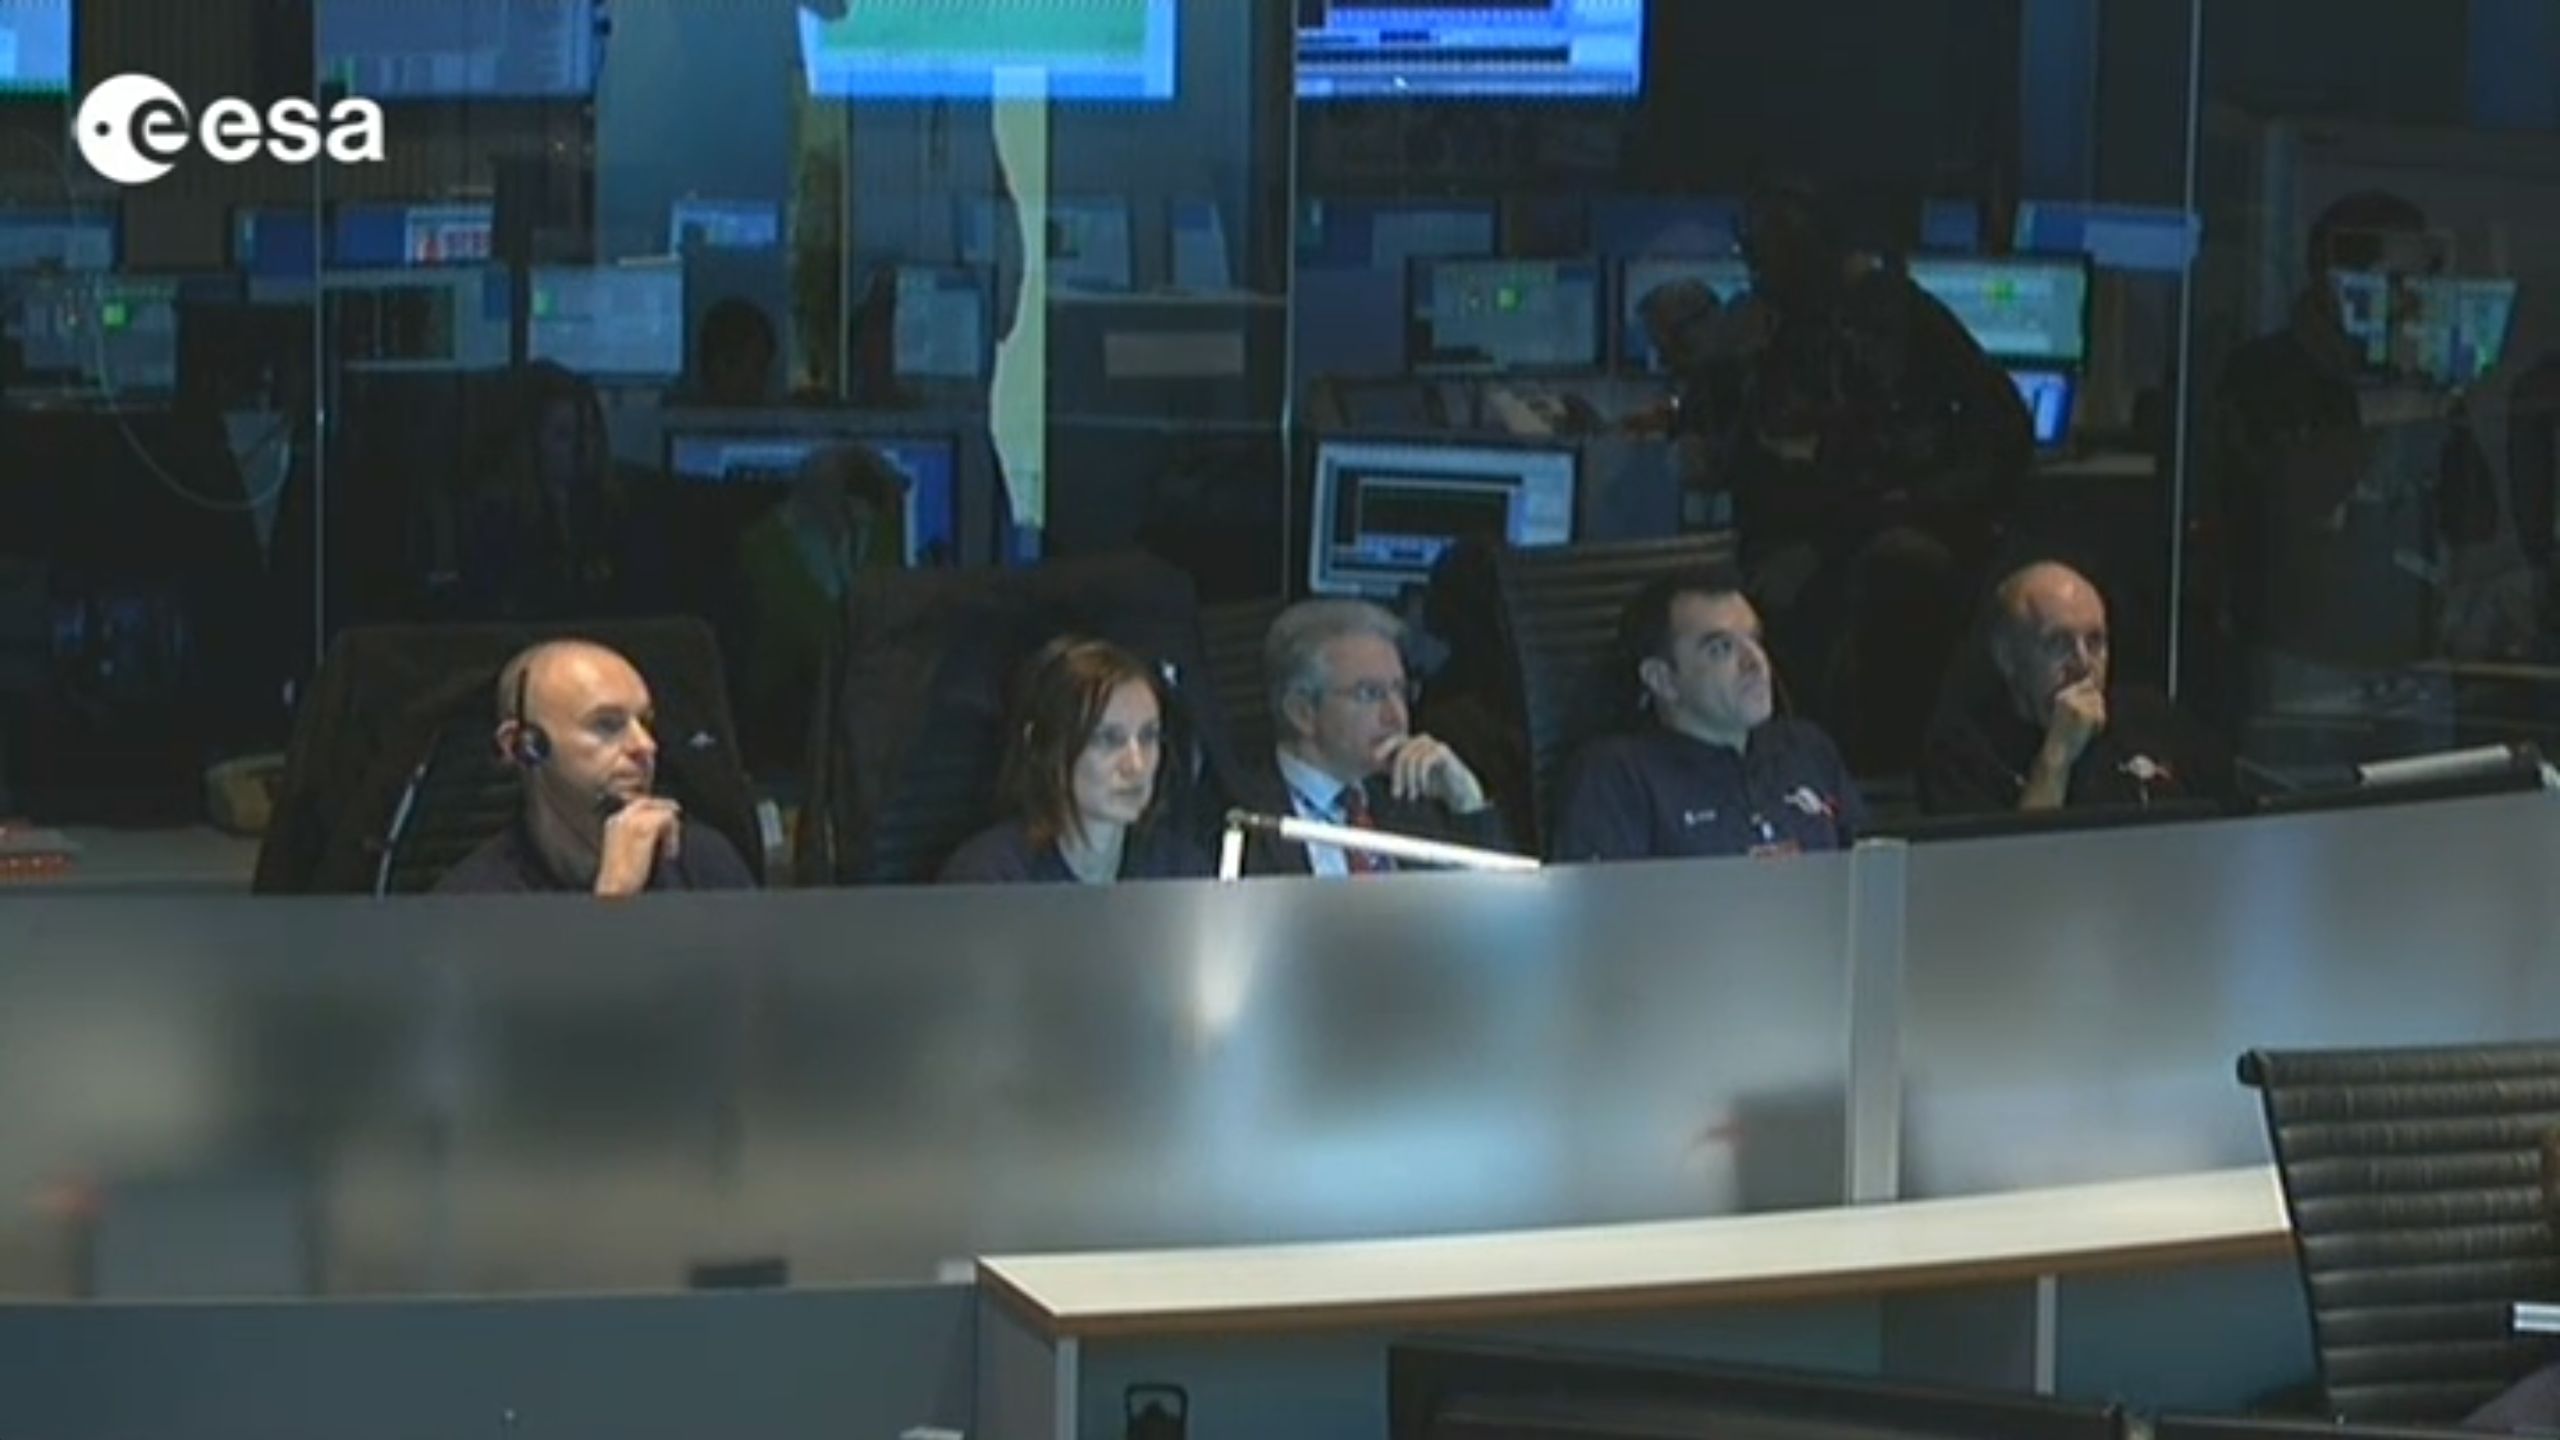 Les visages sont tendus à l'ESOC. L'attente de la réception du signal a été longue (Crédits : ESA TV)